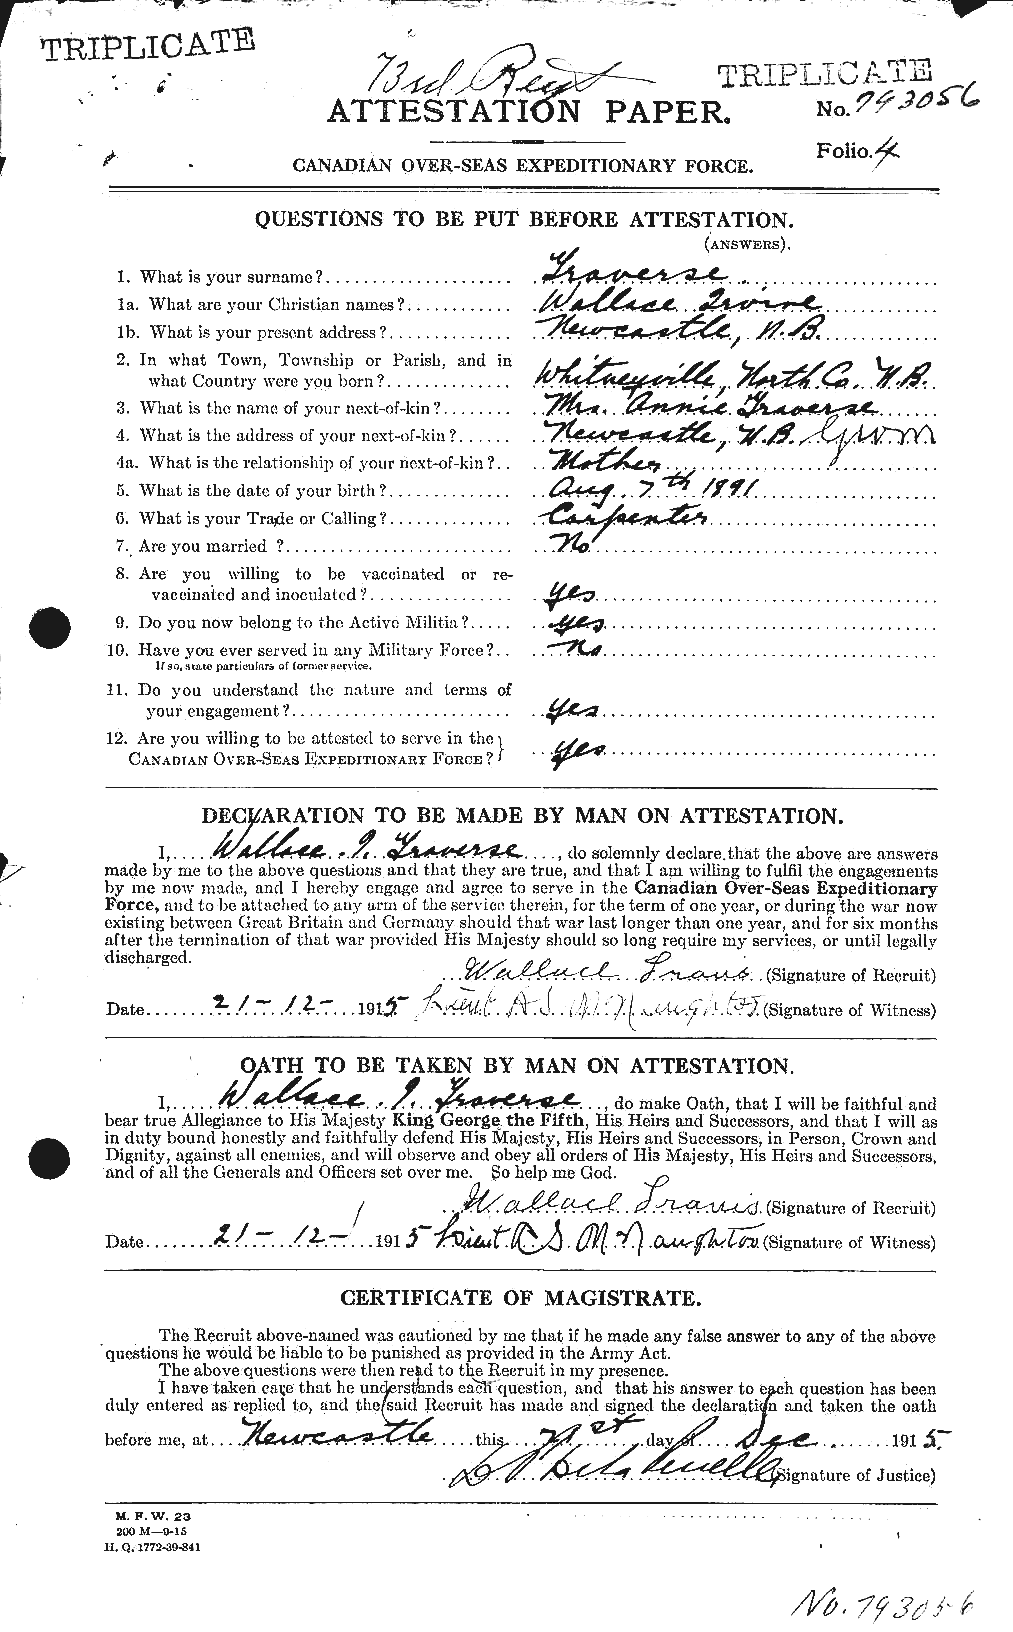 Dossiers du Personnel de la Première Guerre mondiale - CEC 638743a